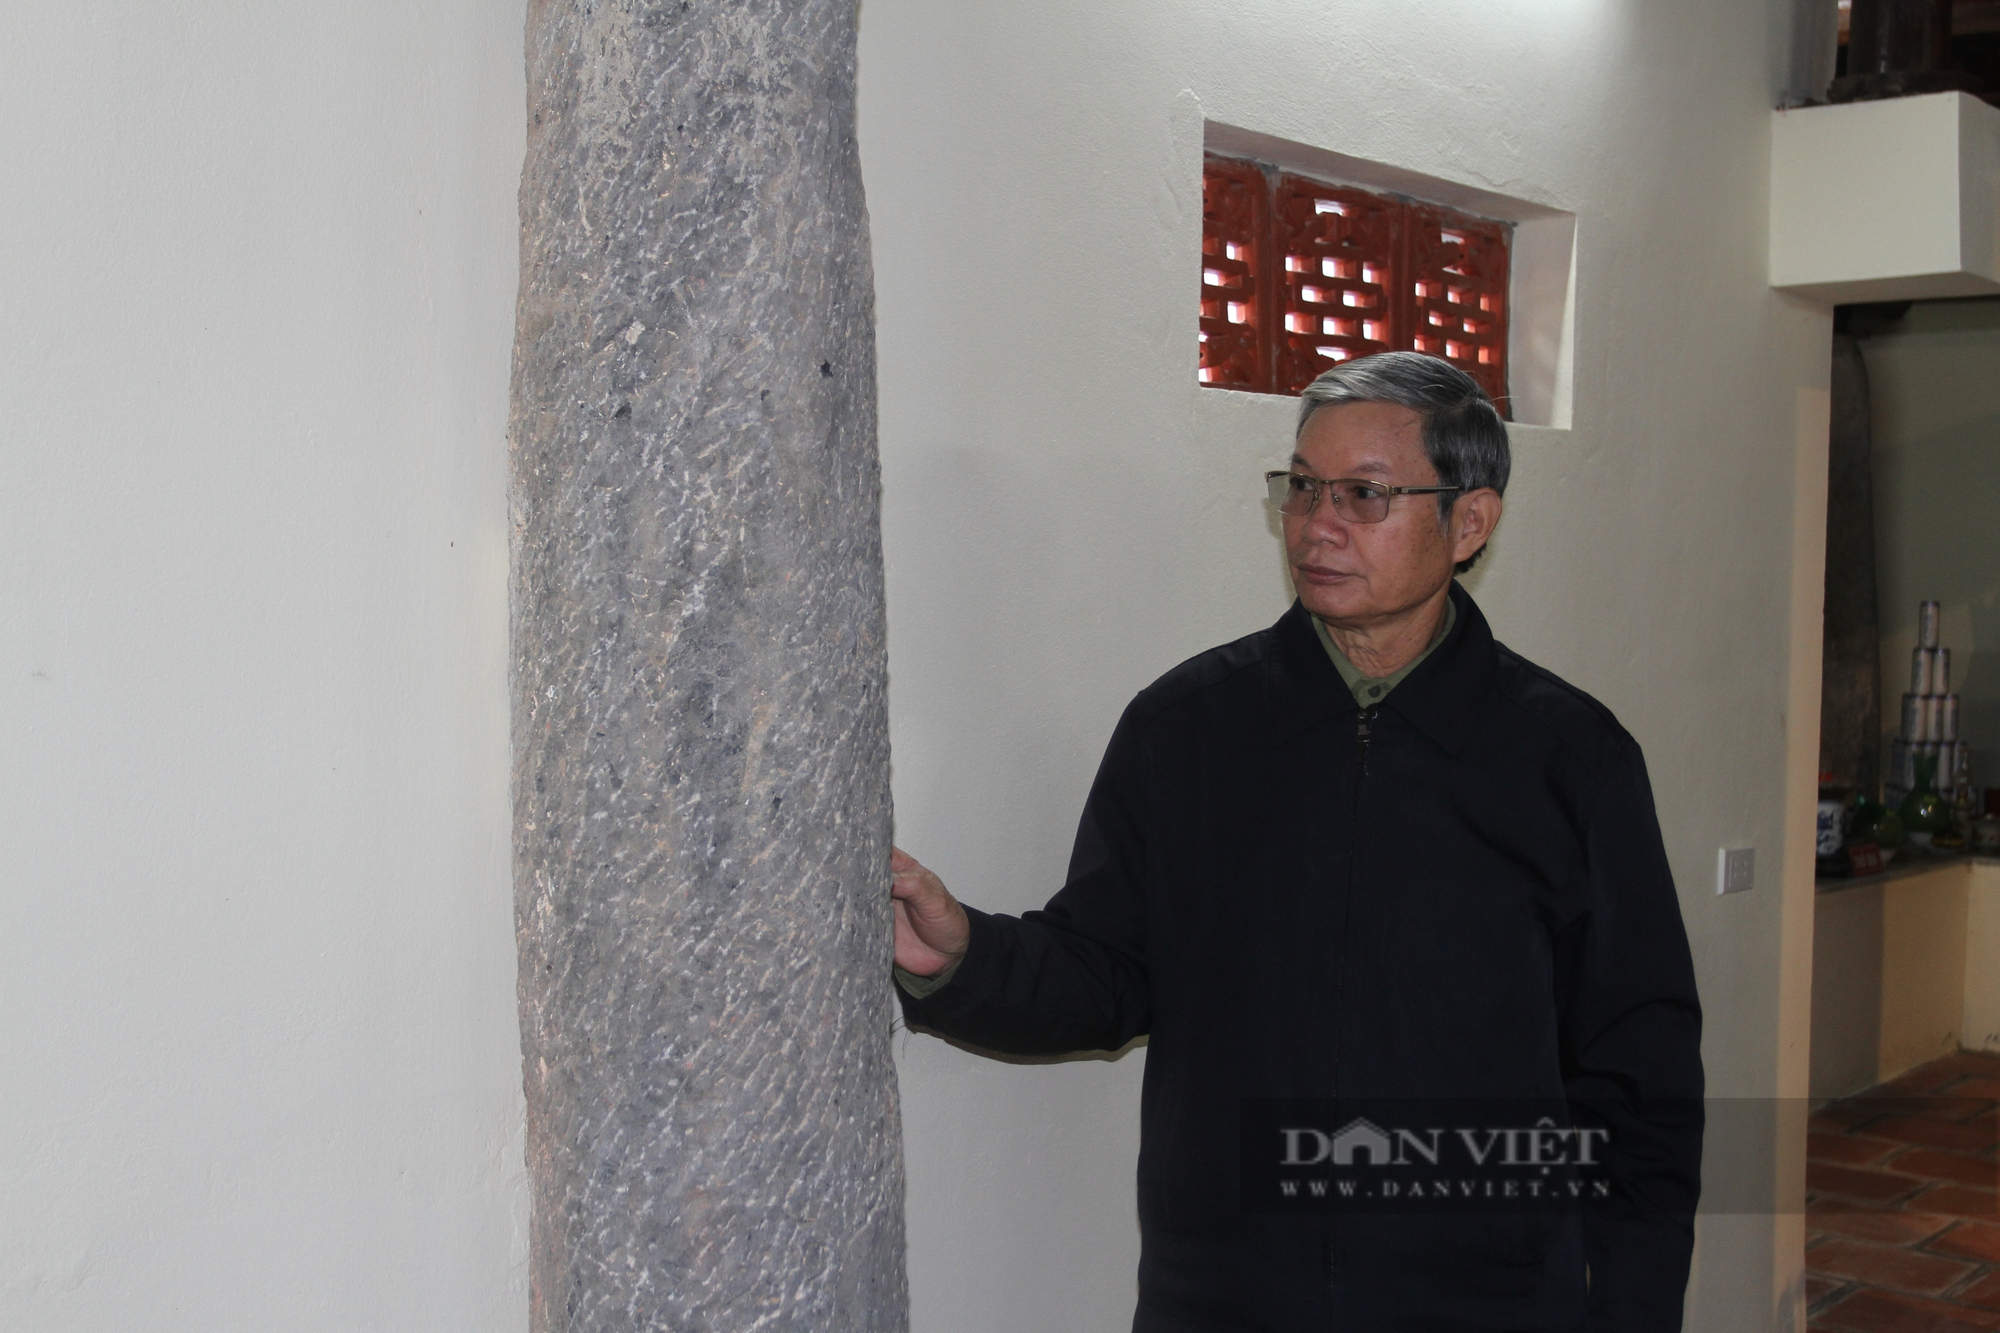 Chùa Làng Ca: Ngôi chùa gần 300 năm tuổi còn lưu giữ nhiều hiện vật cổ - Ảnh 4.